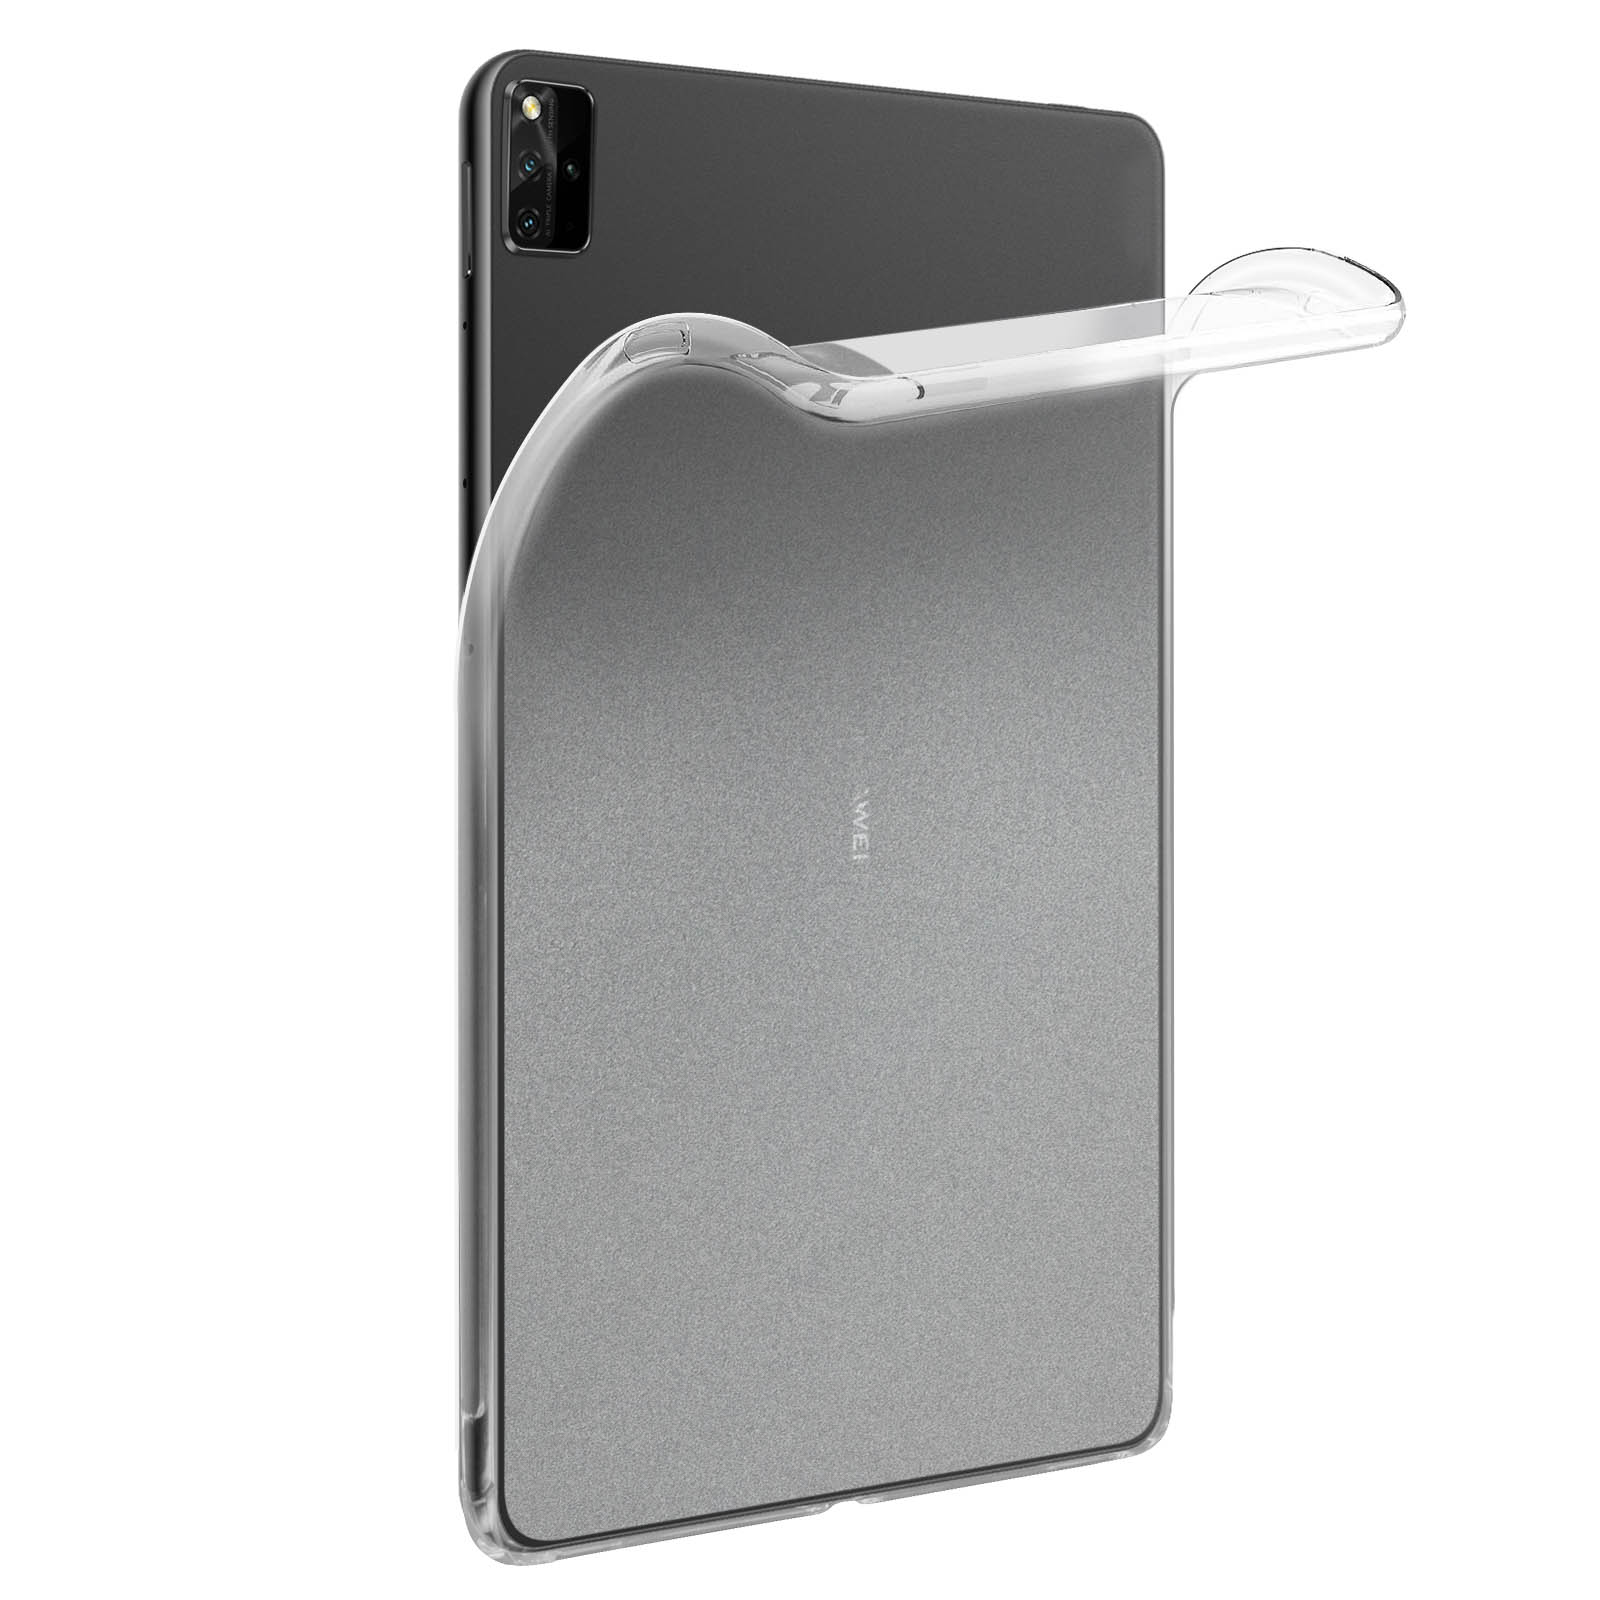 Silikongel, Gelhülle AVIZAR für Transparent Huawei Schutzhüllen Series Backcover